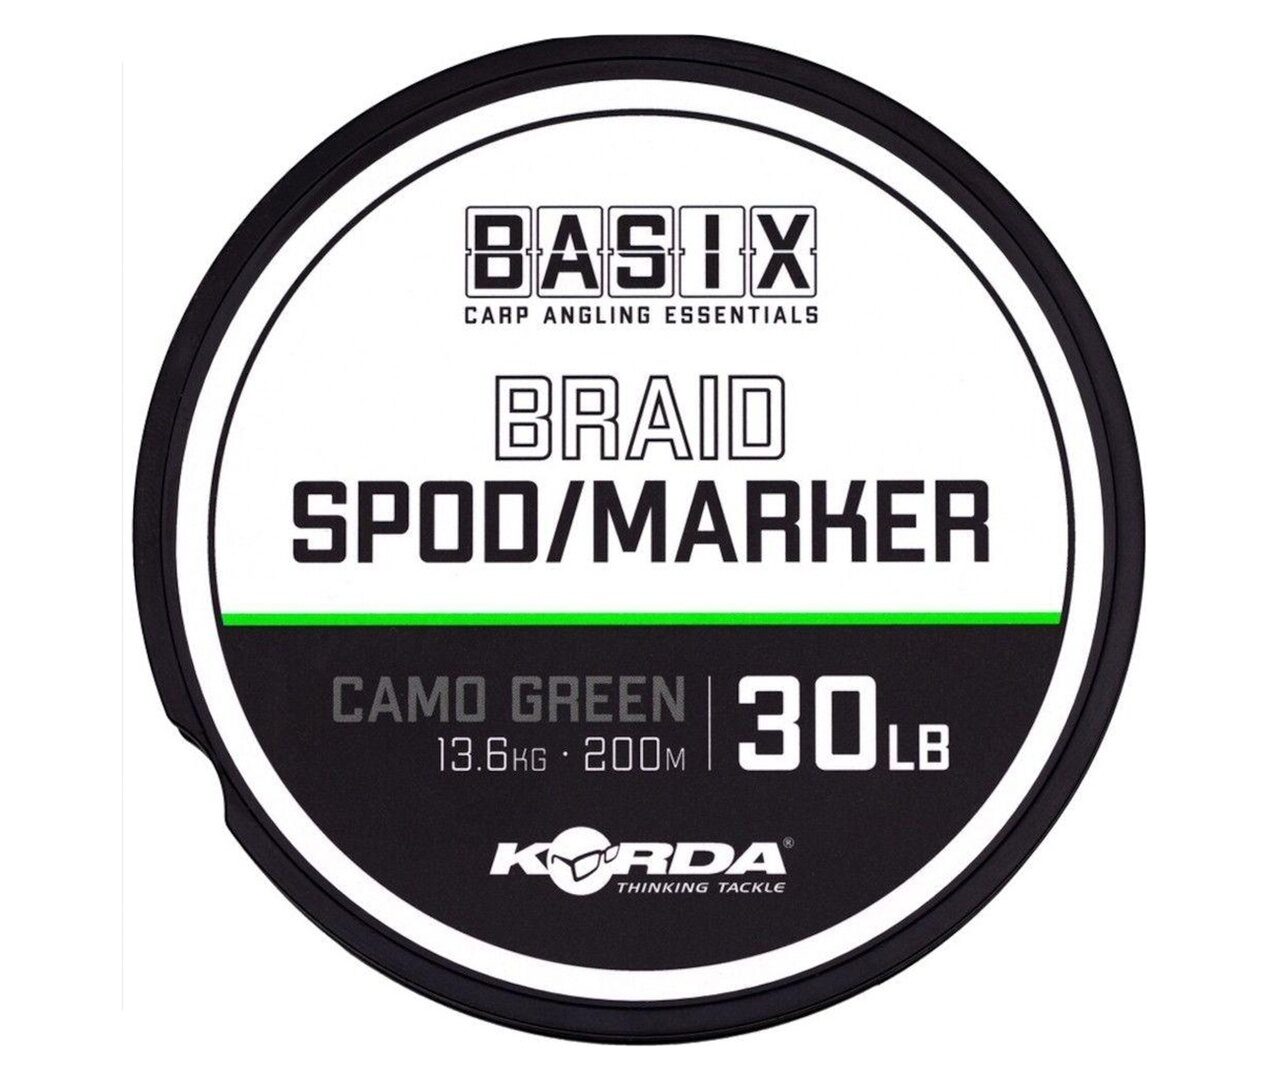 Плетеный шнур для спода и маркера 13.6 кг / 30 Lb Коричневый Korda (Корда) - Spod Marker Basix Braid, 200 м